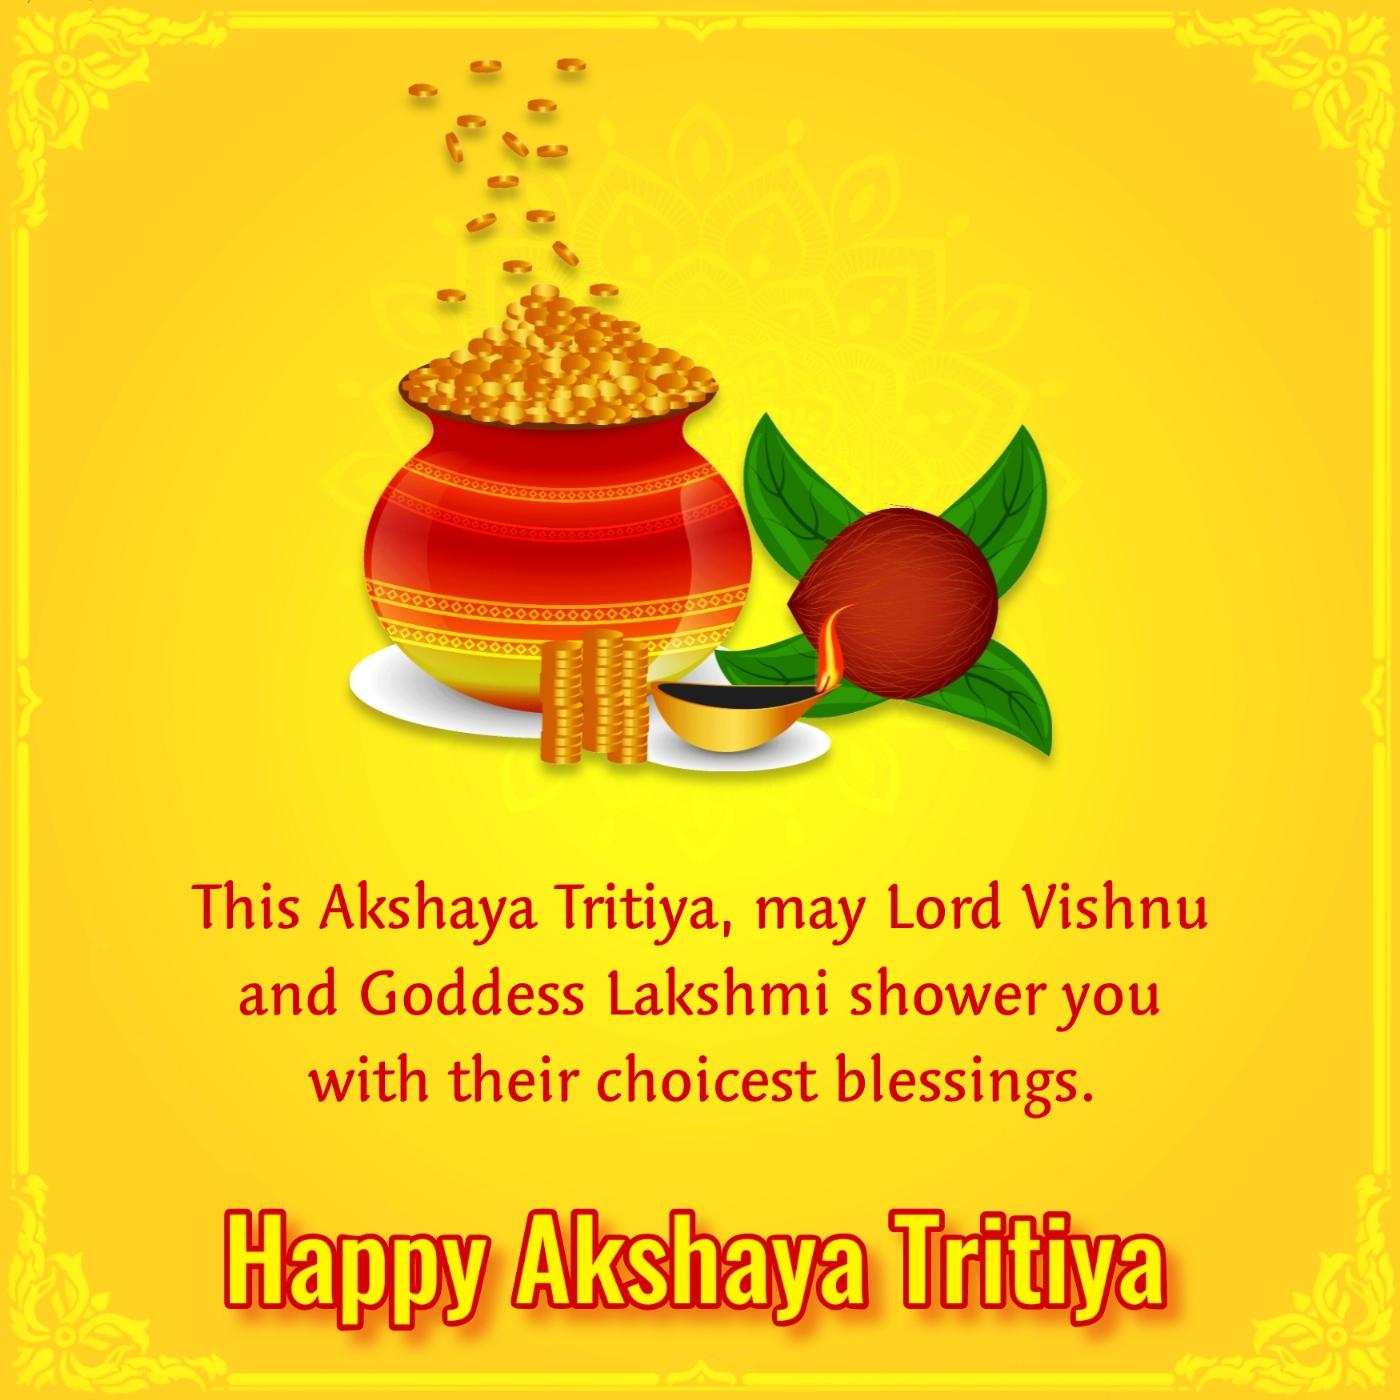 This Akshaya Tritiya may Lord Vishnu and Goddess Lakshmi shower